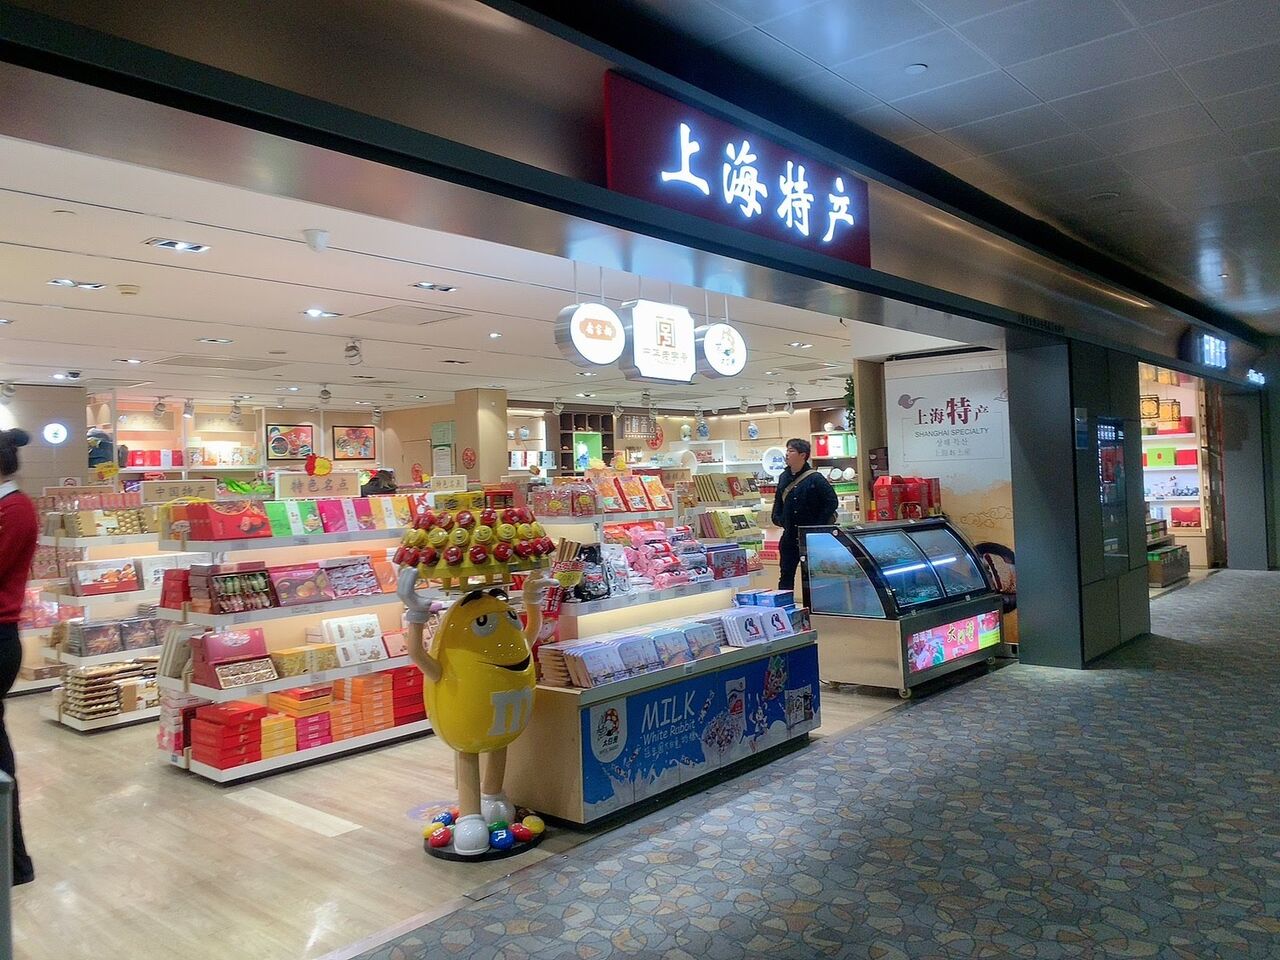 上海クリスマス19 浦東国際空港第2ターミナルの制限エリア 免税店やレストランは Meritrip